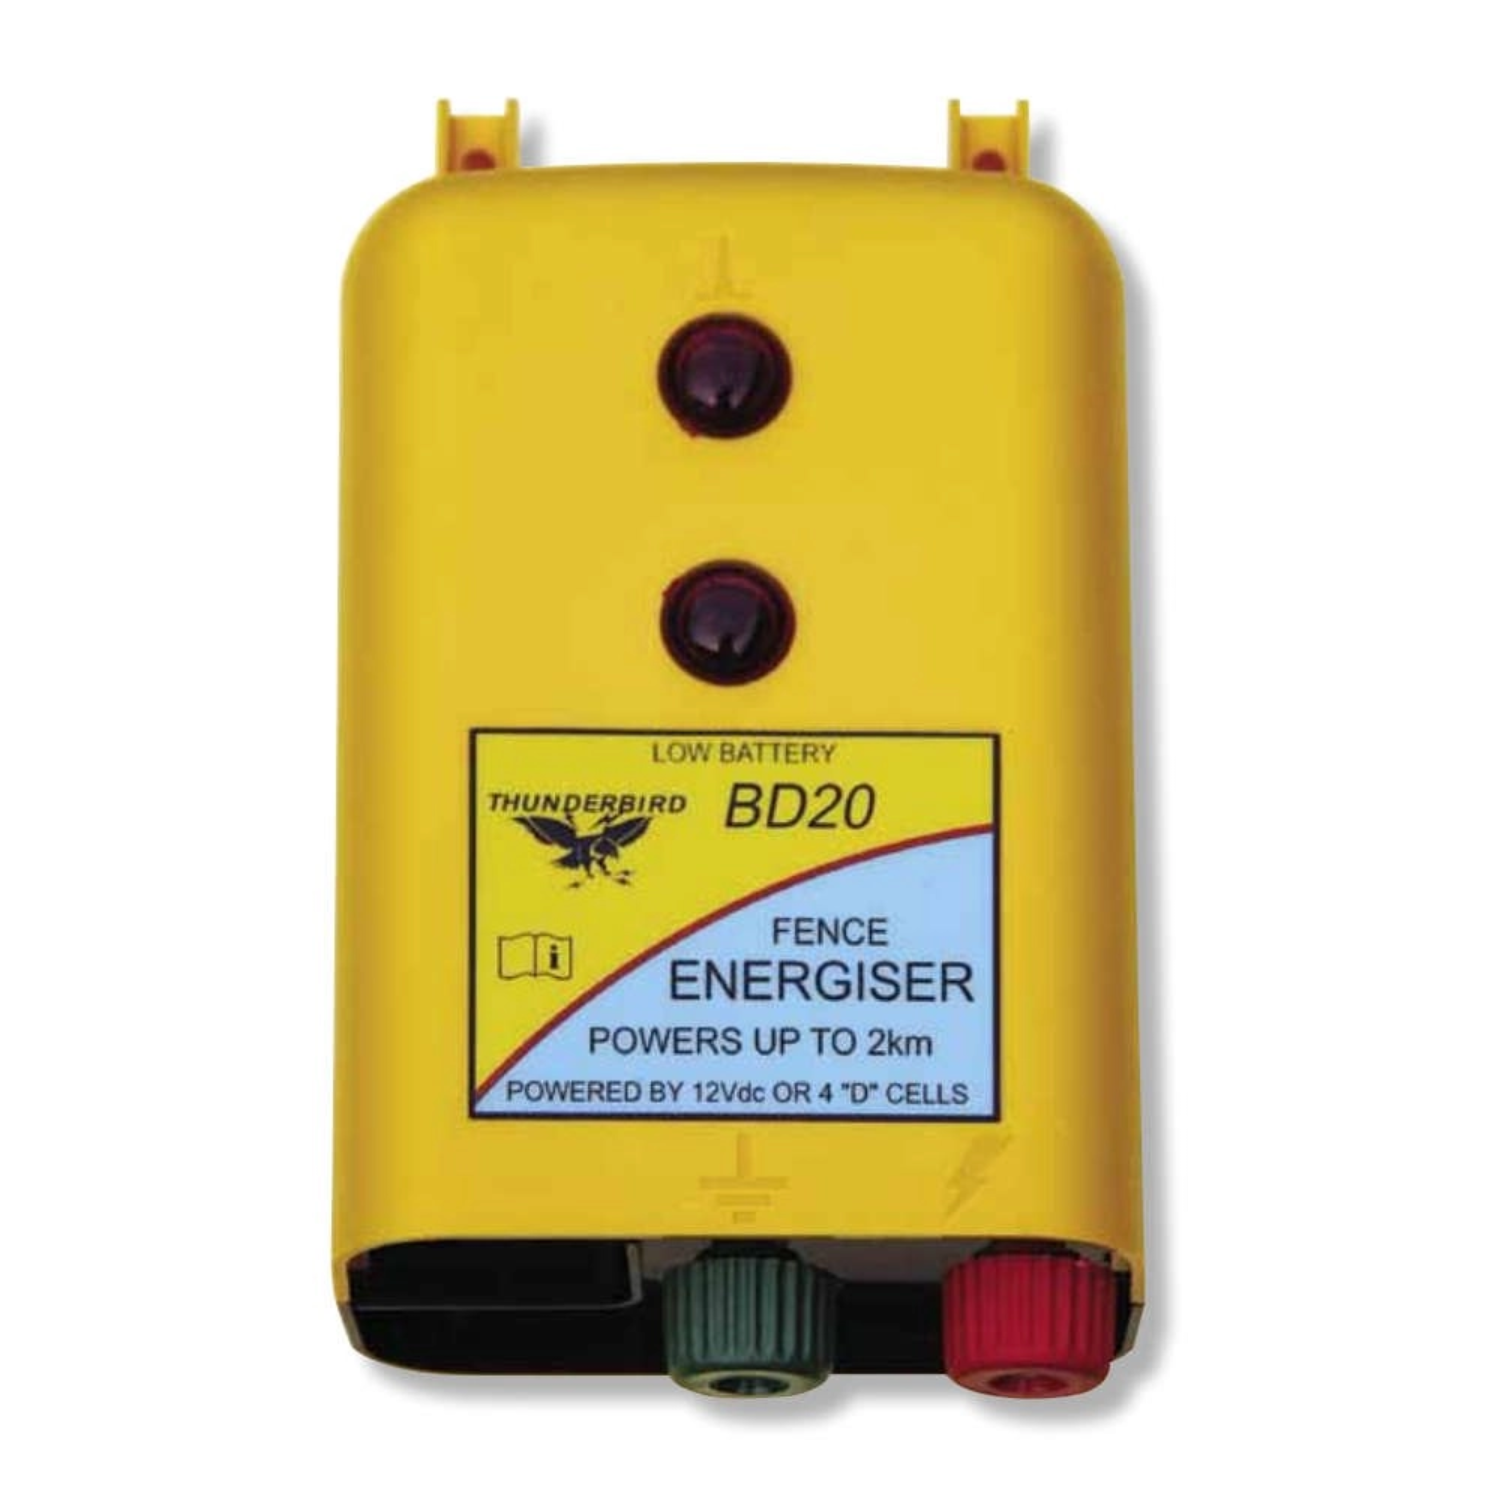 Thunderbird Fence Energiser - 2km BD22